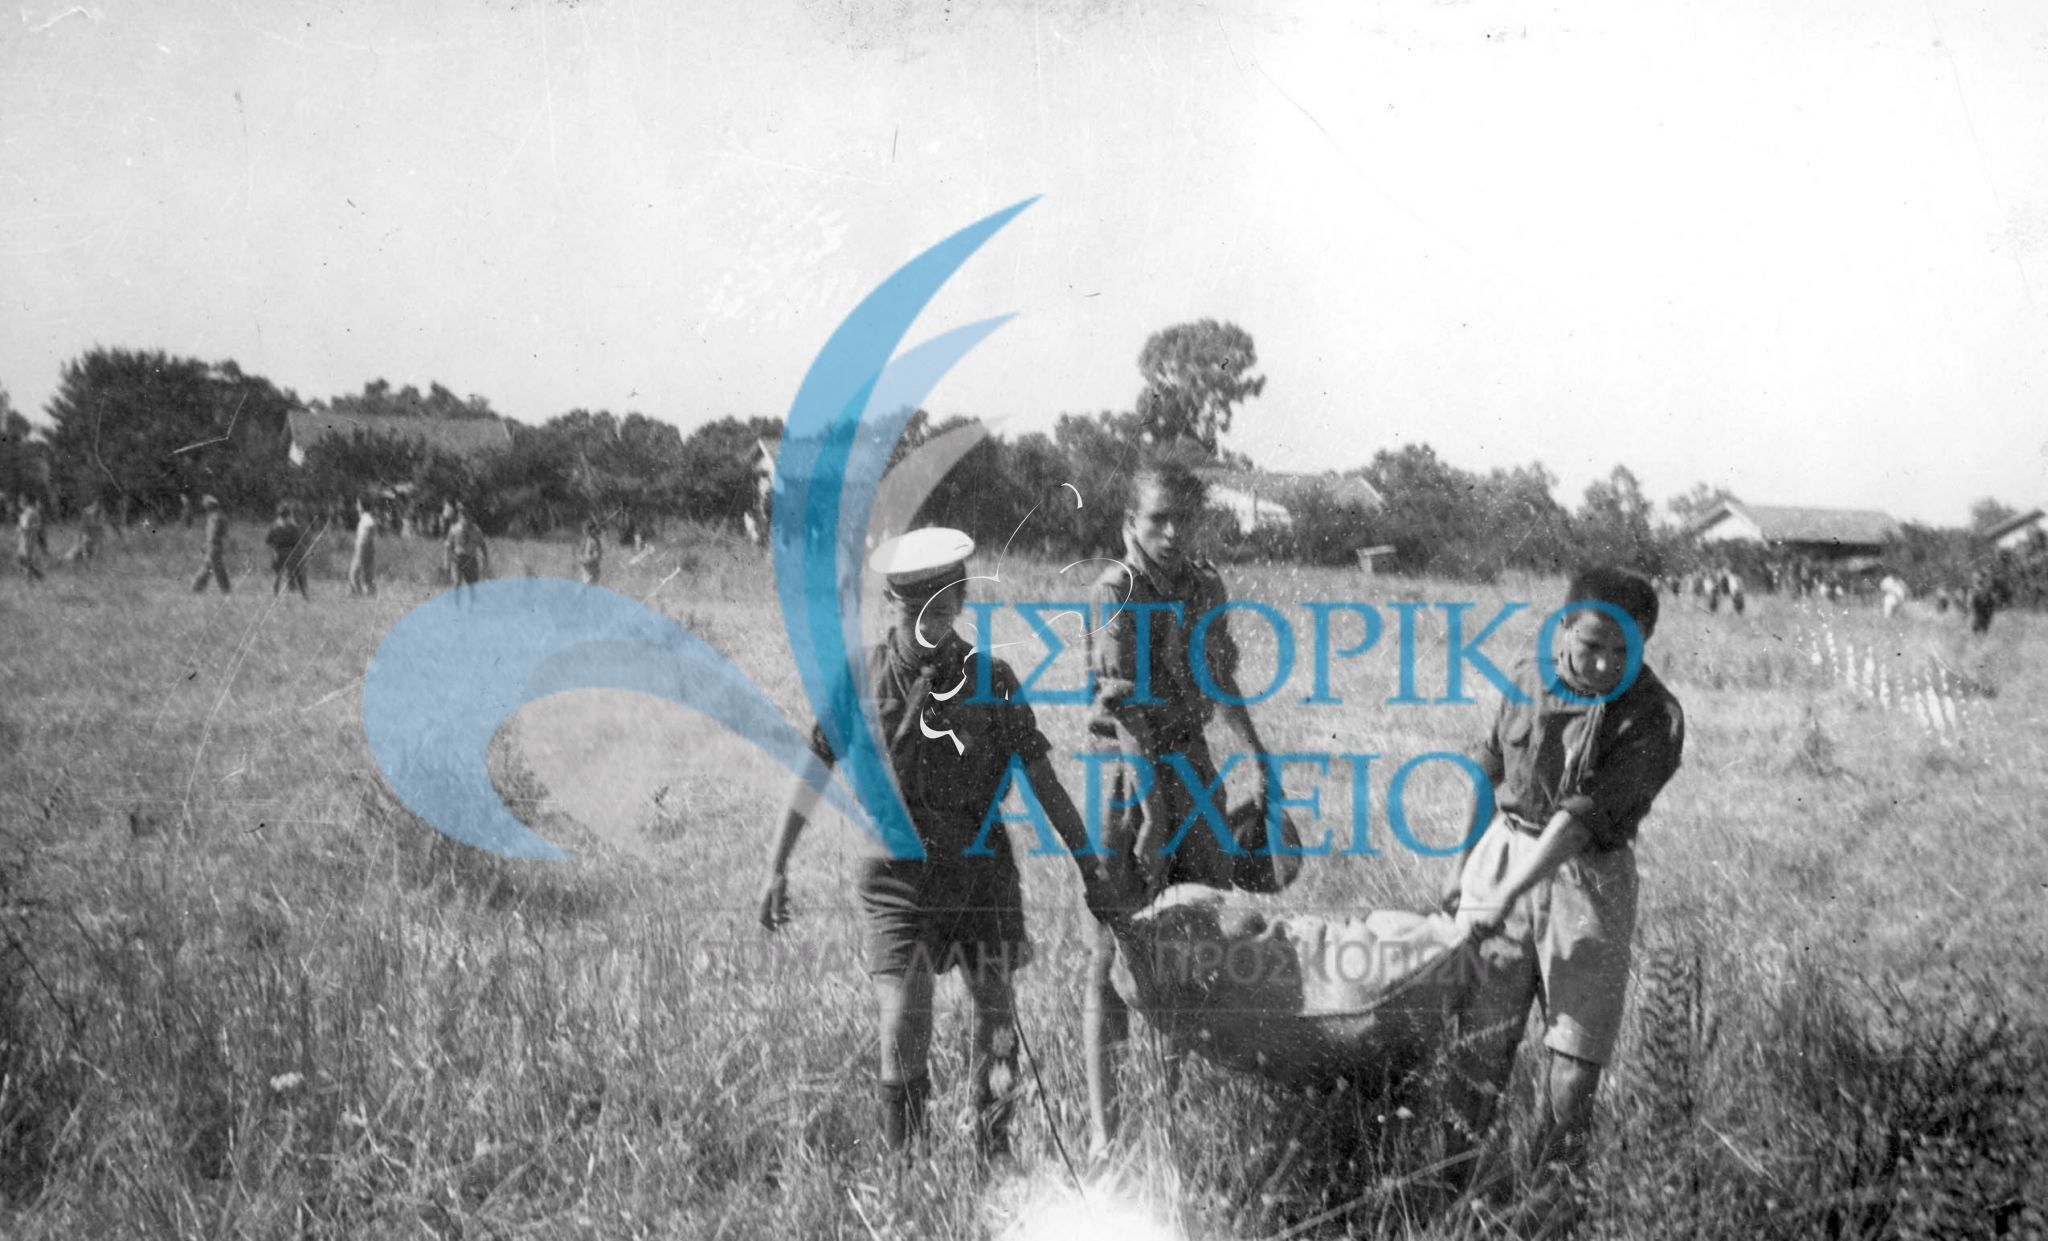 Πρόσκοποι προσφέρουν υπηρεσίες στην κοινωνία της Λευκάδας μετά το σεισμό το 1948.